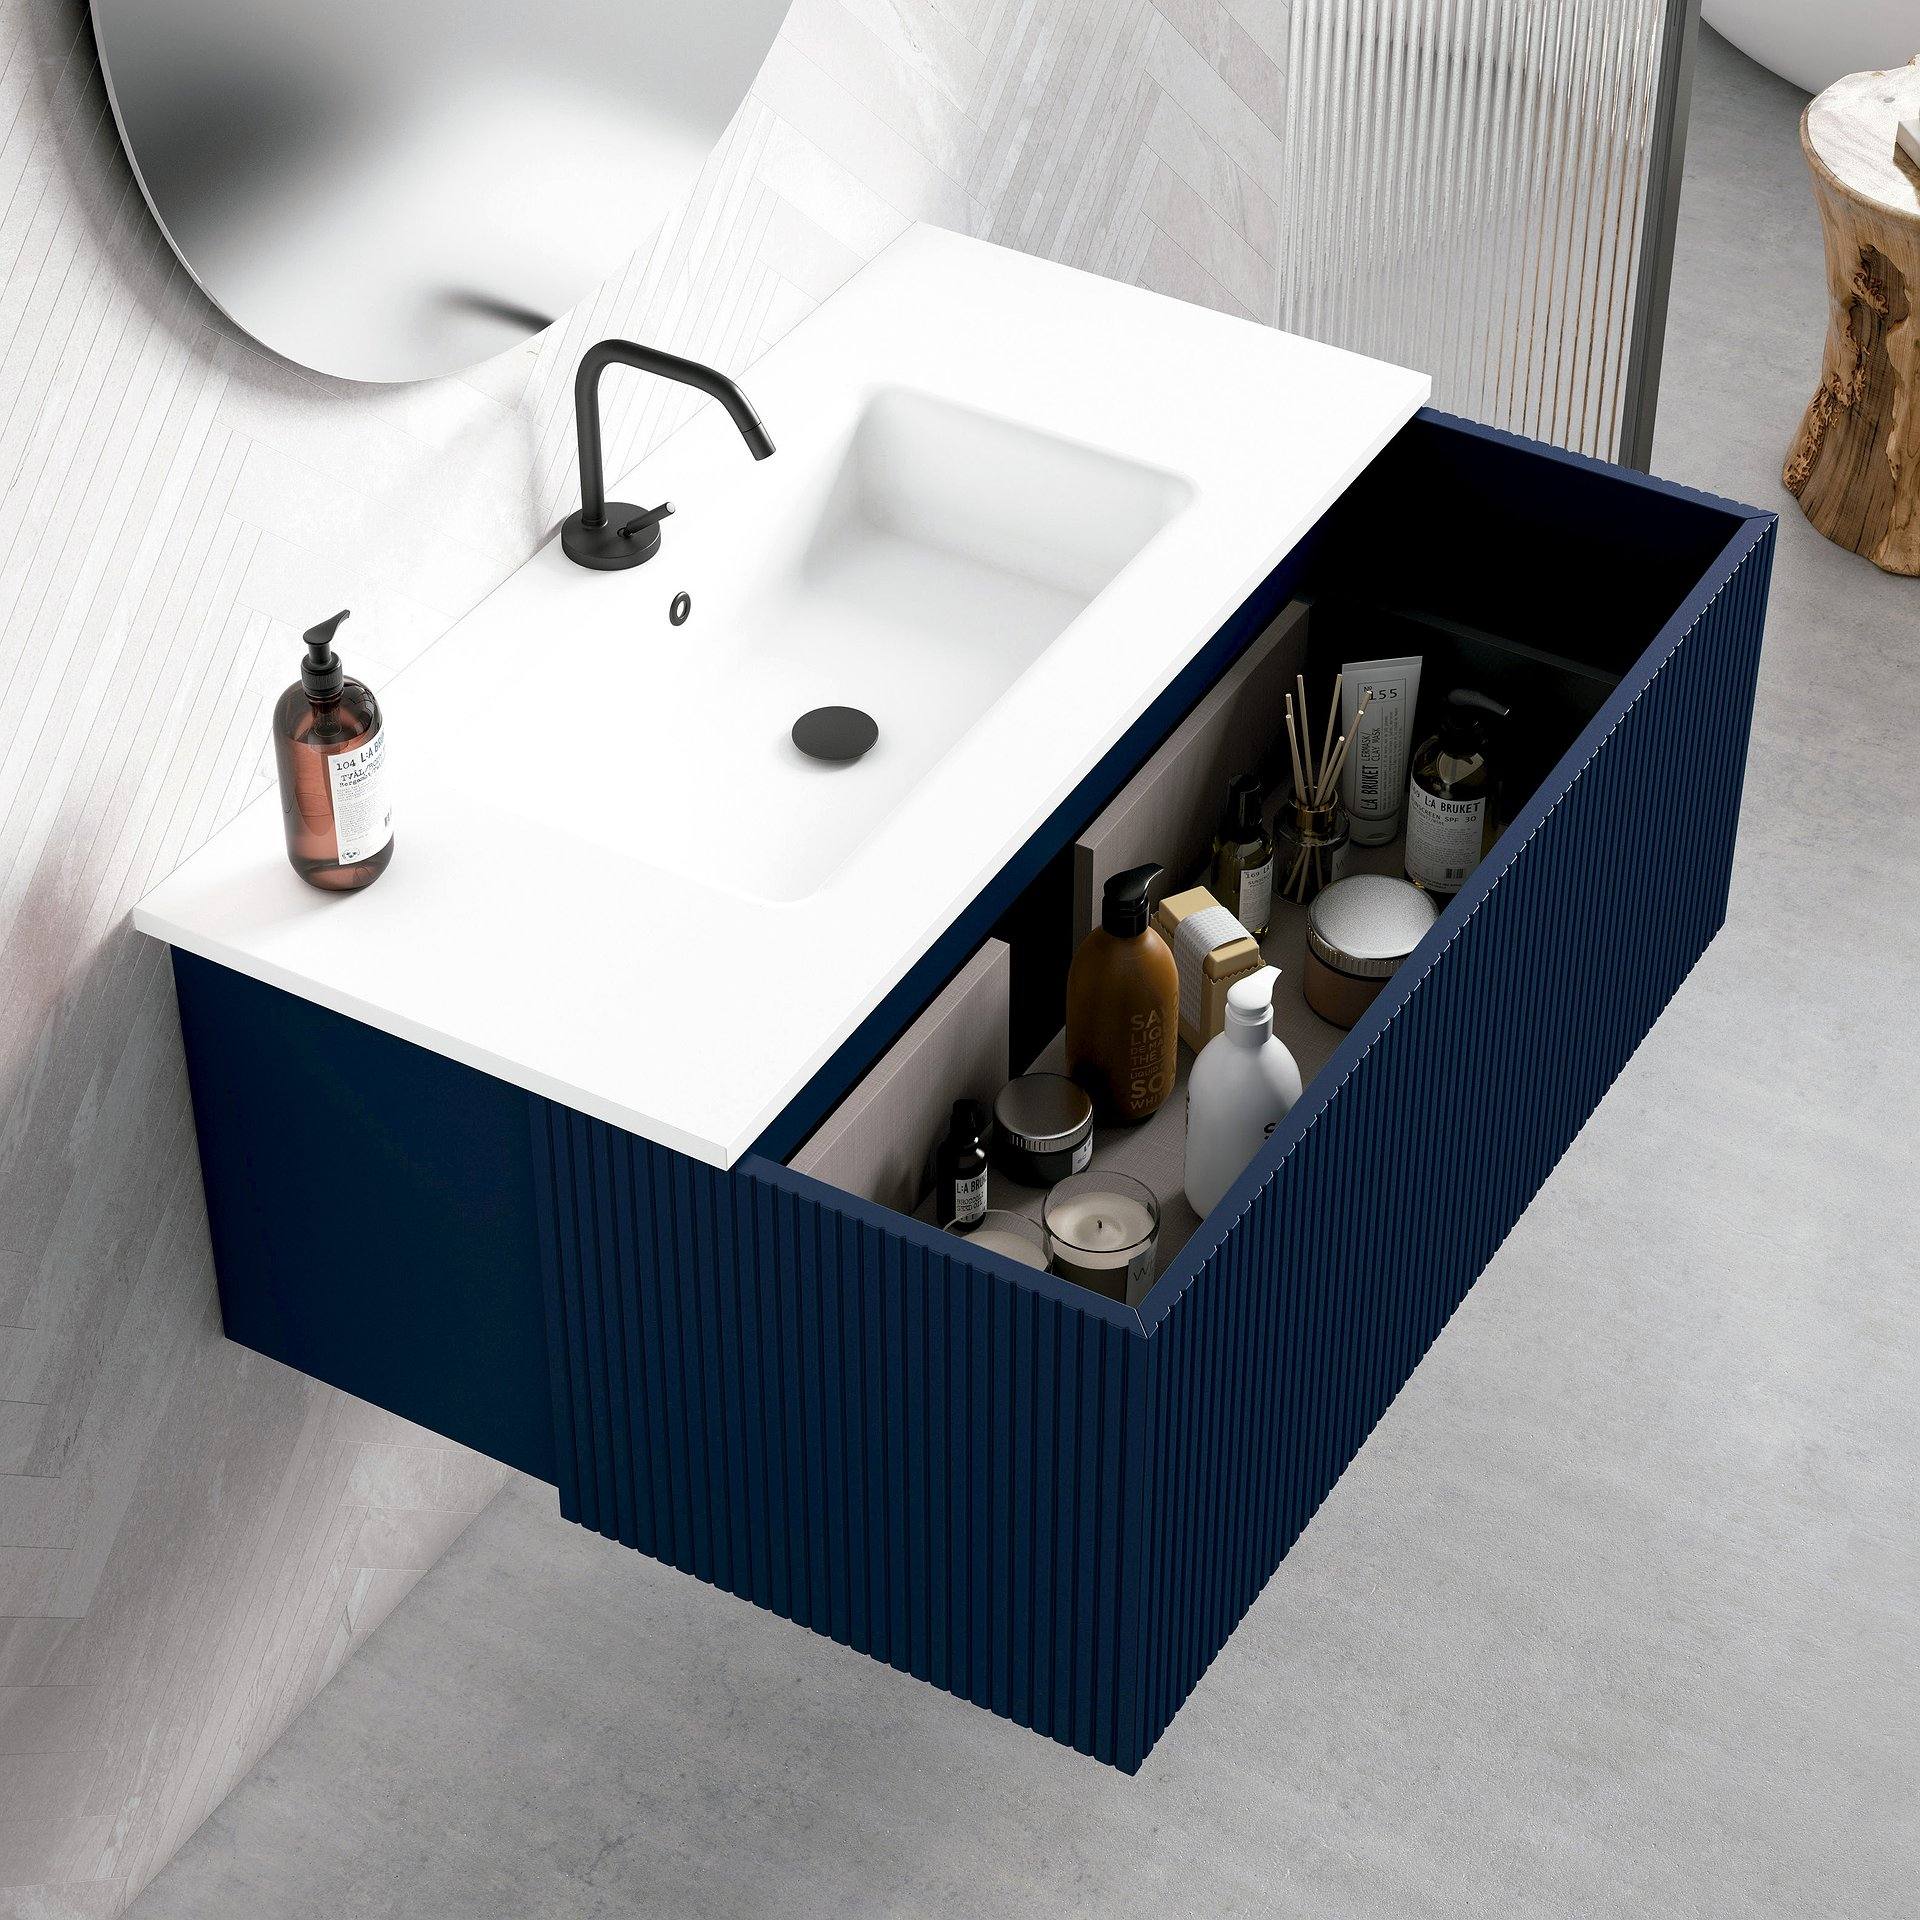 Conjunto mueble de baño ARCO con patas 3 cajones 60-80-100 CM VisoBath -  Maison de Luxe